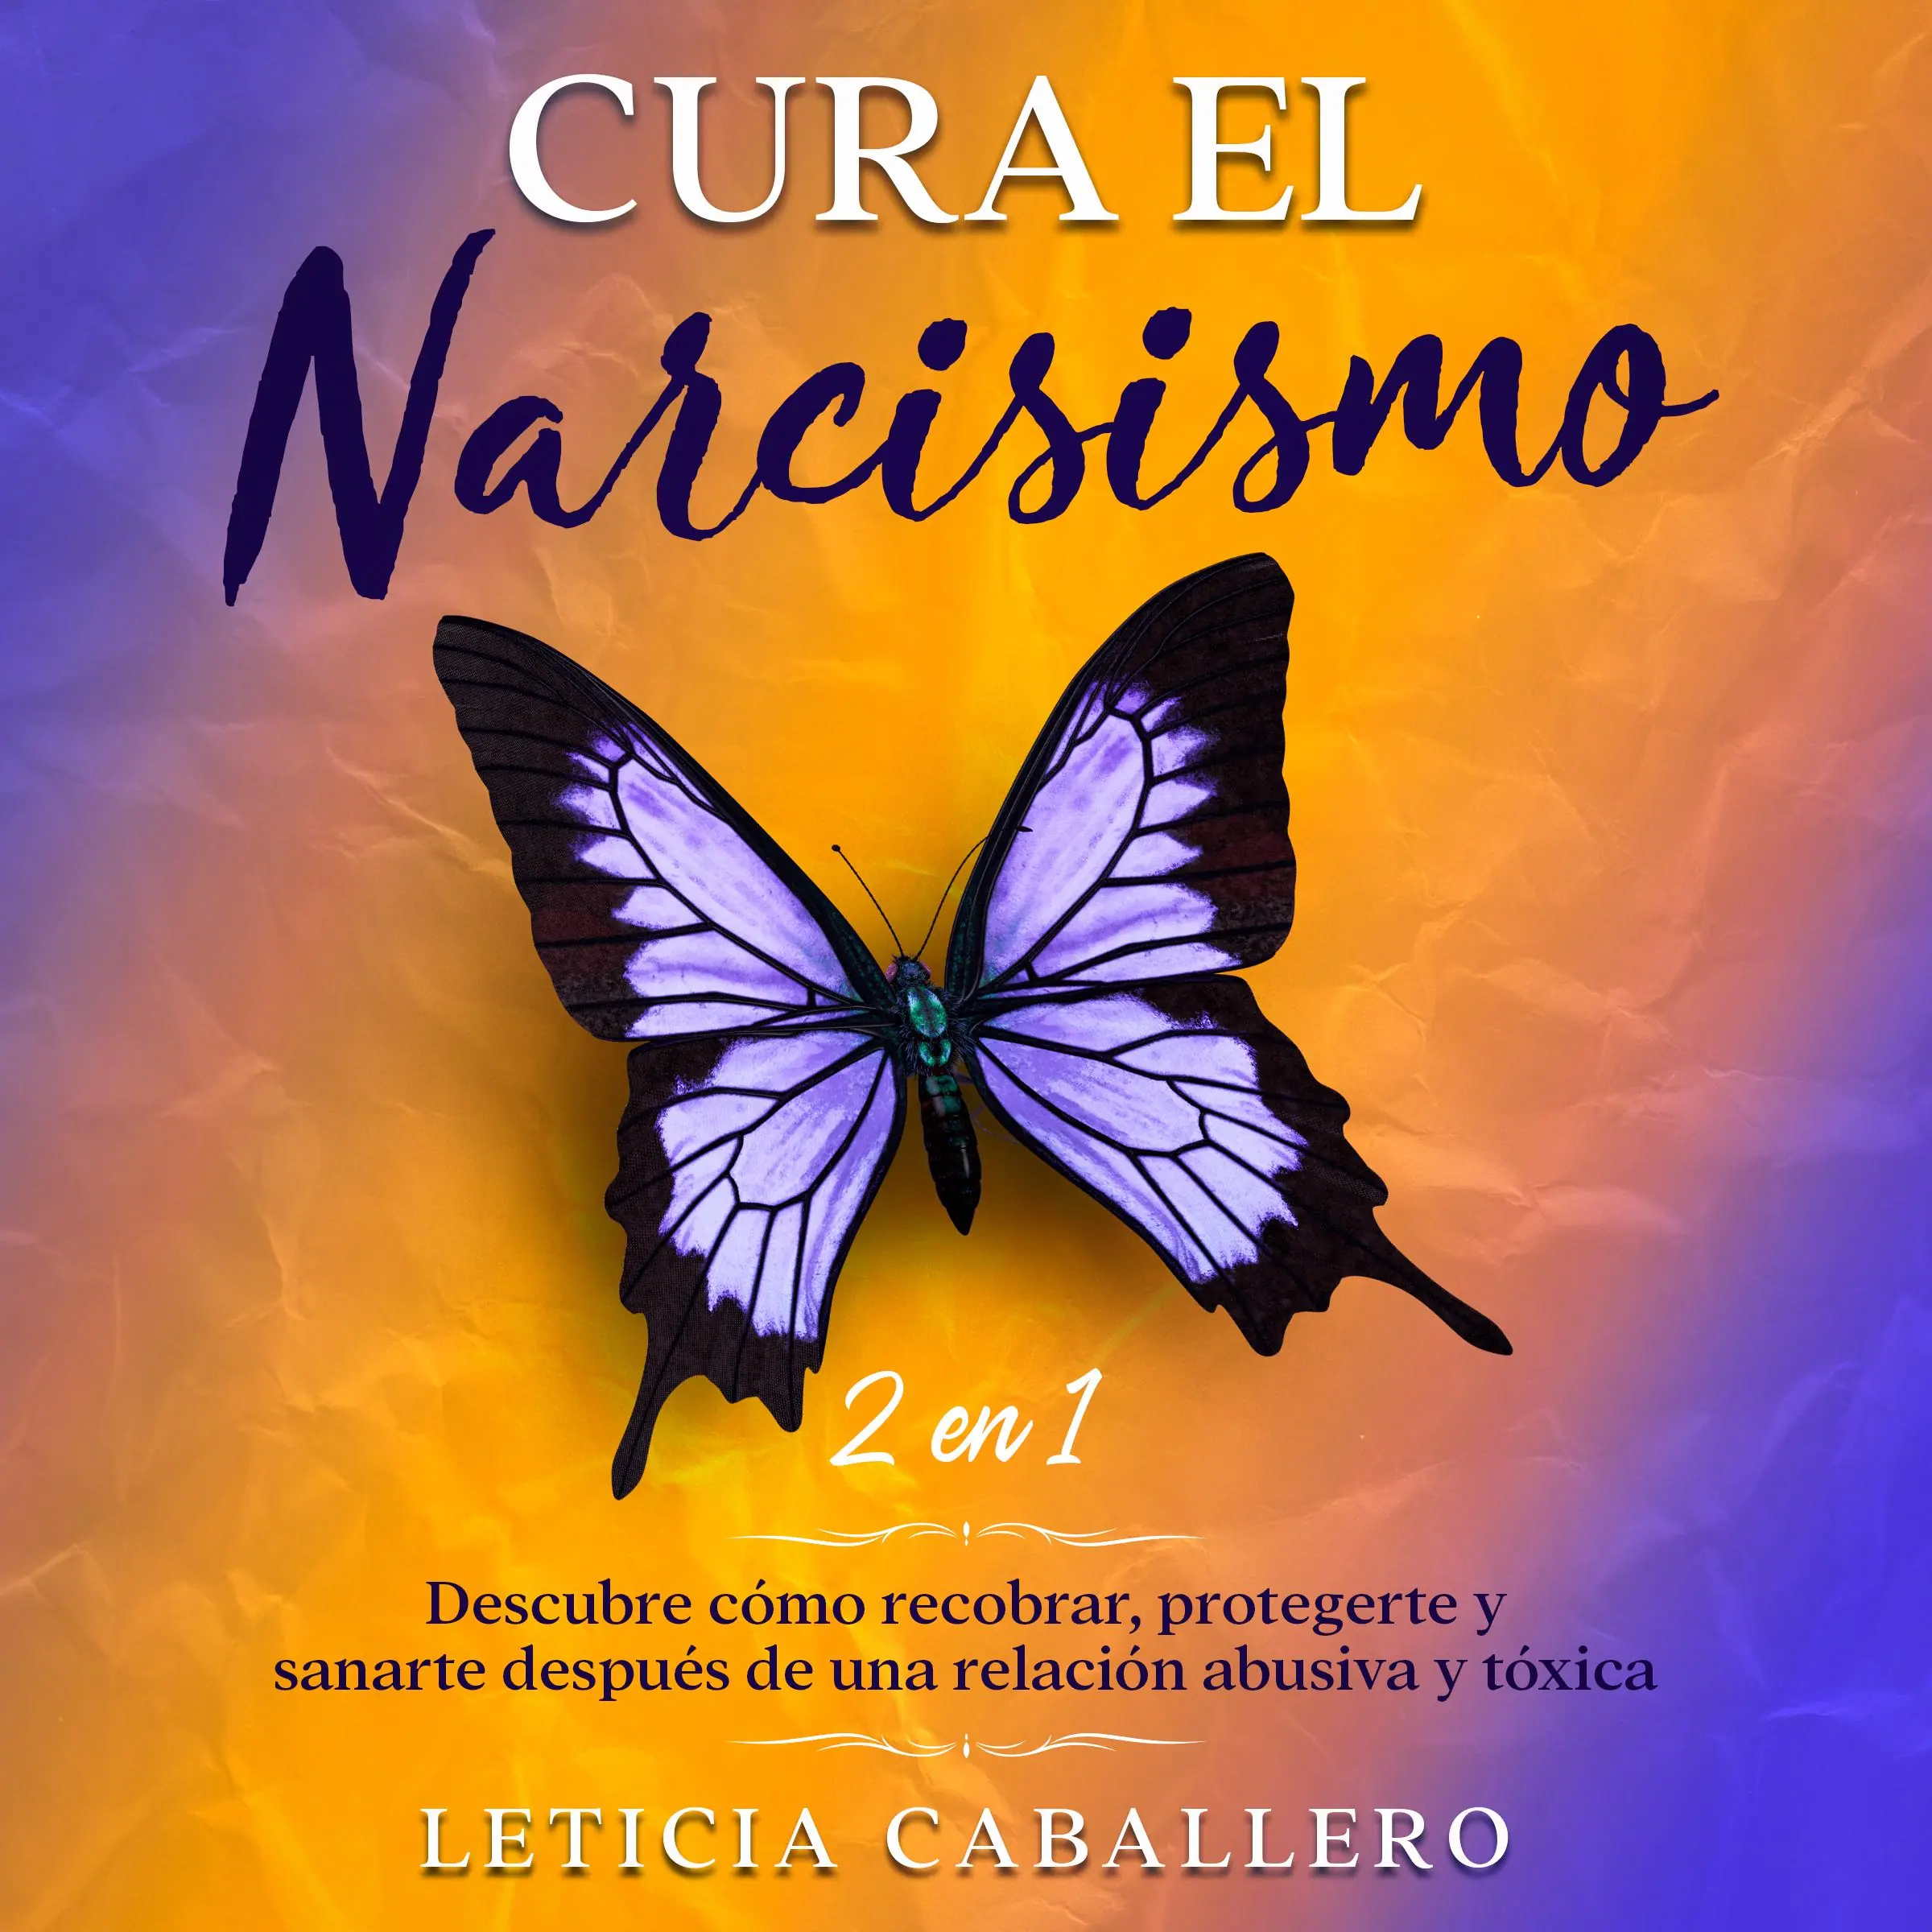 Cura el narcisismo Audiobook by Leticia Caballero